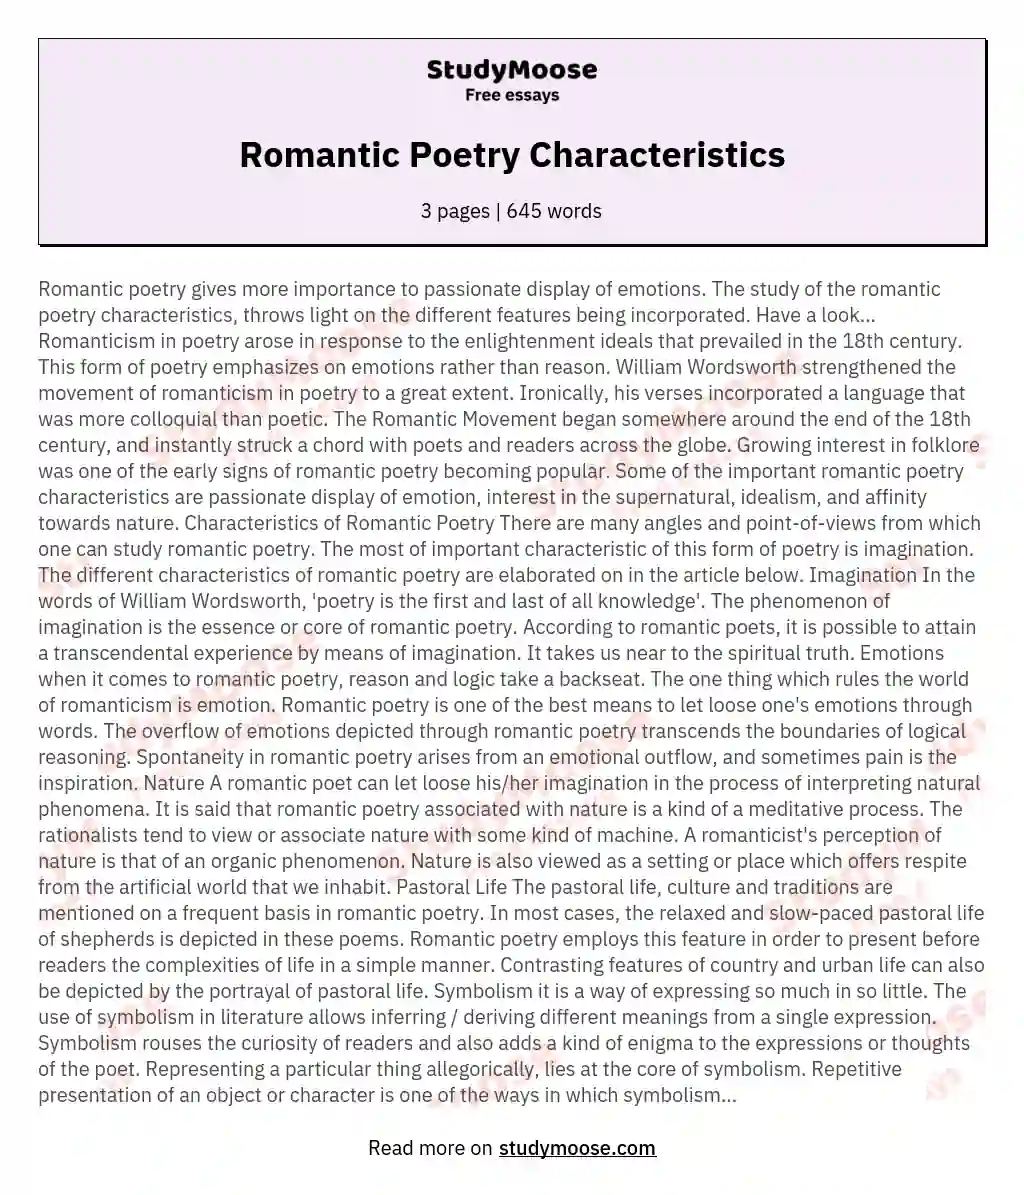 Romantic Poetry Characteristics Free Essay Example